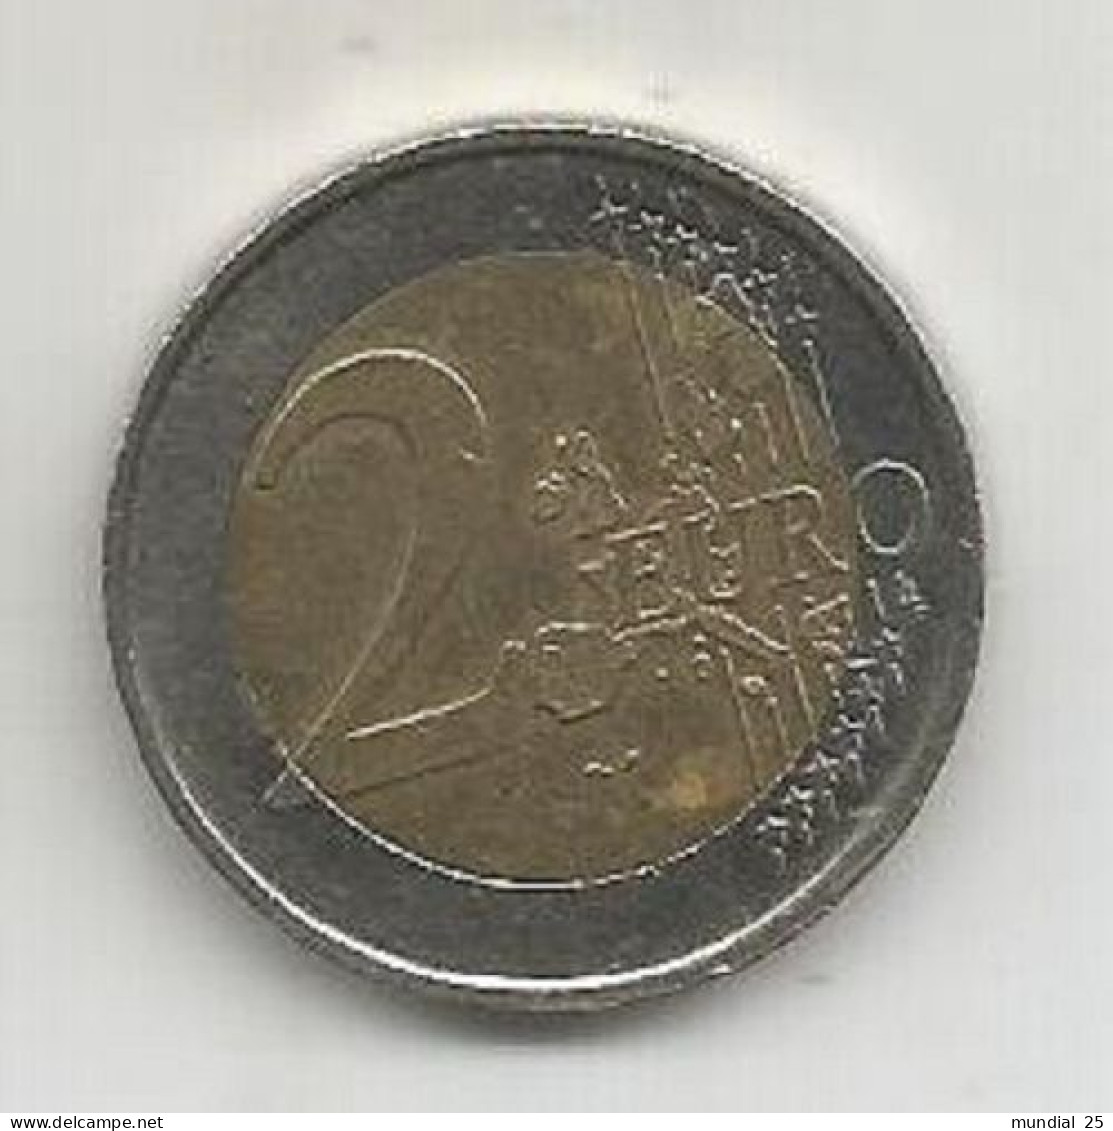 SPAIN 2 EURO 2002 M - España